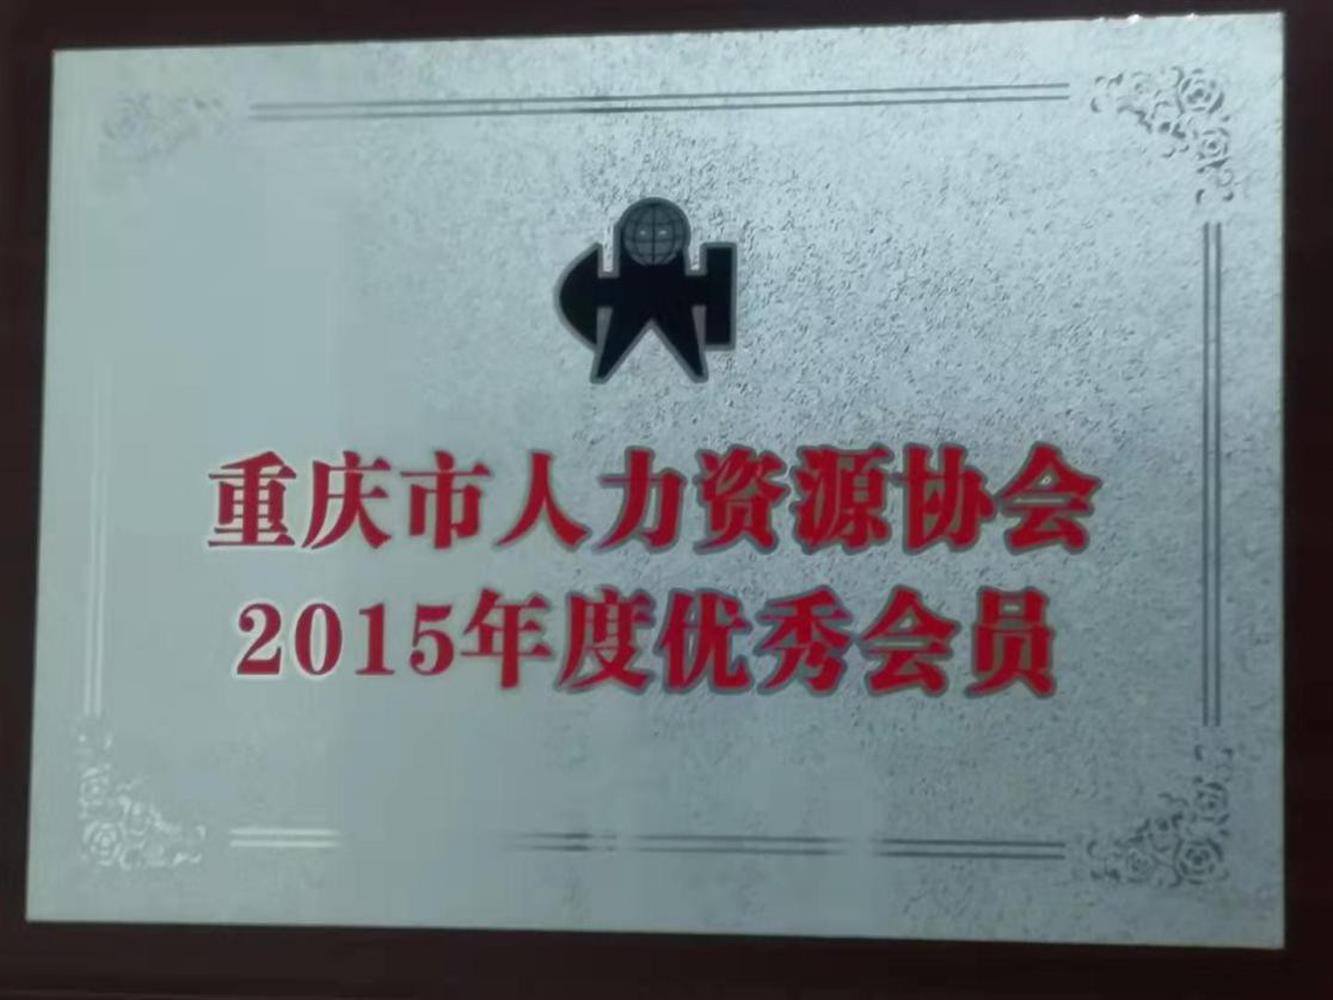 重庆市人力资源协会2015年度优秀会员